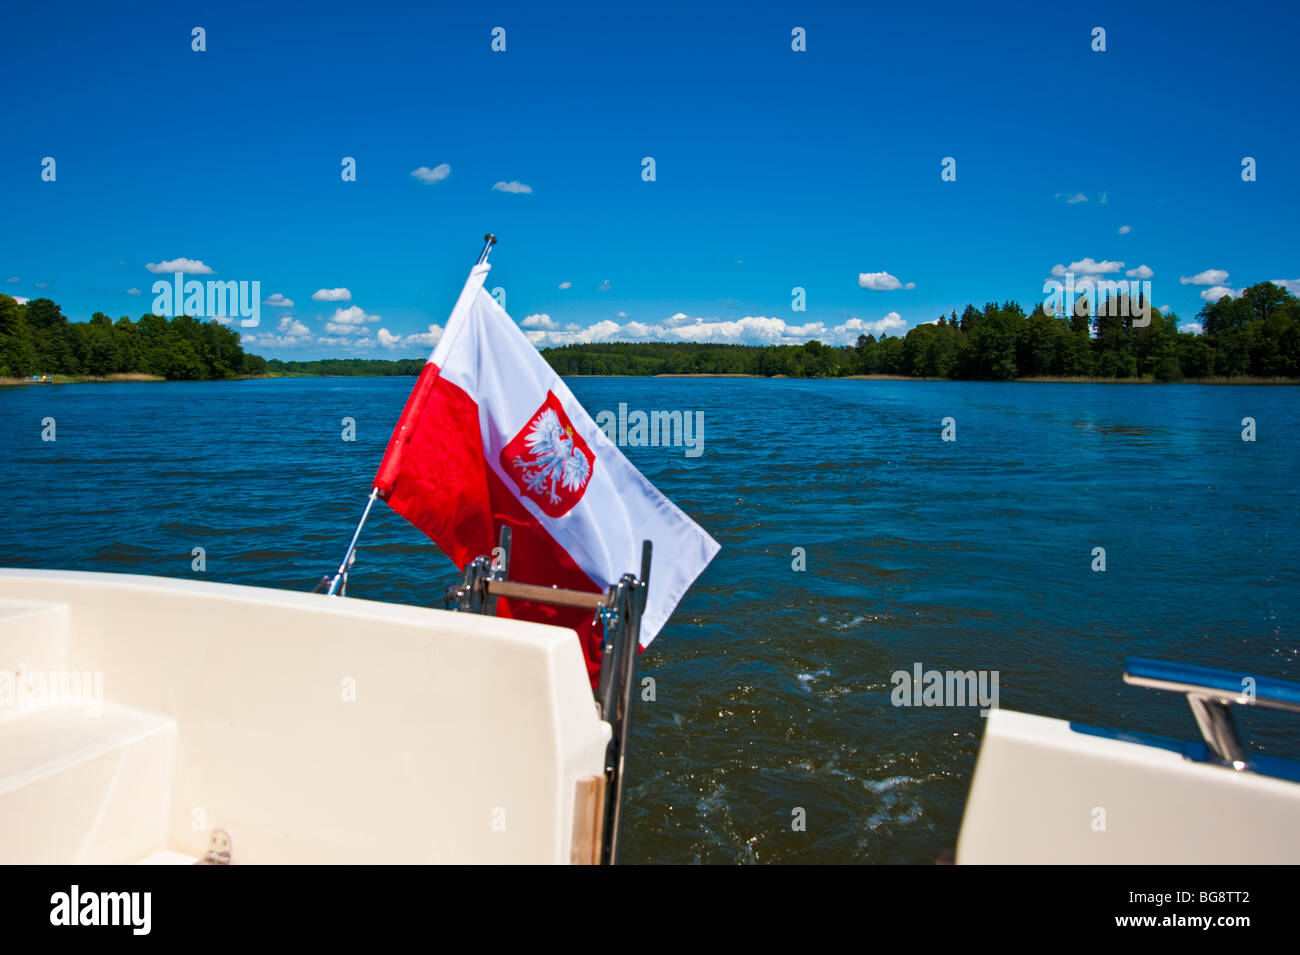 Stern de bateau avec drapeau polonais au Canal Elblaski près de Ilawa, Pologne | Oberländischer Kanal, Deutsch Eylau, Polen Banque D'Images